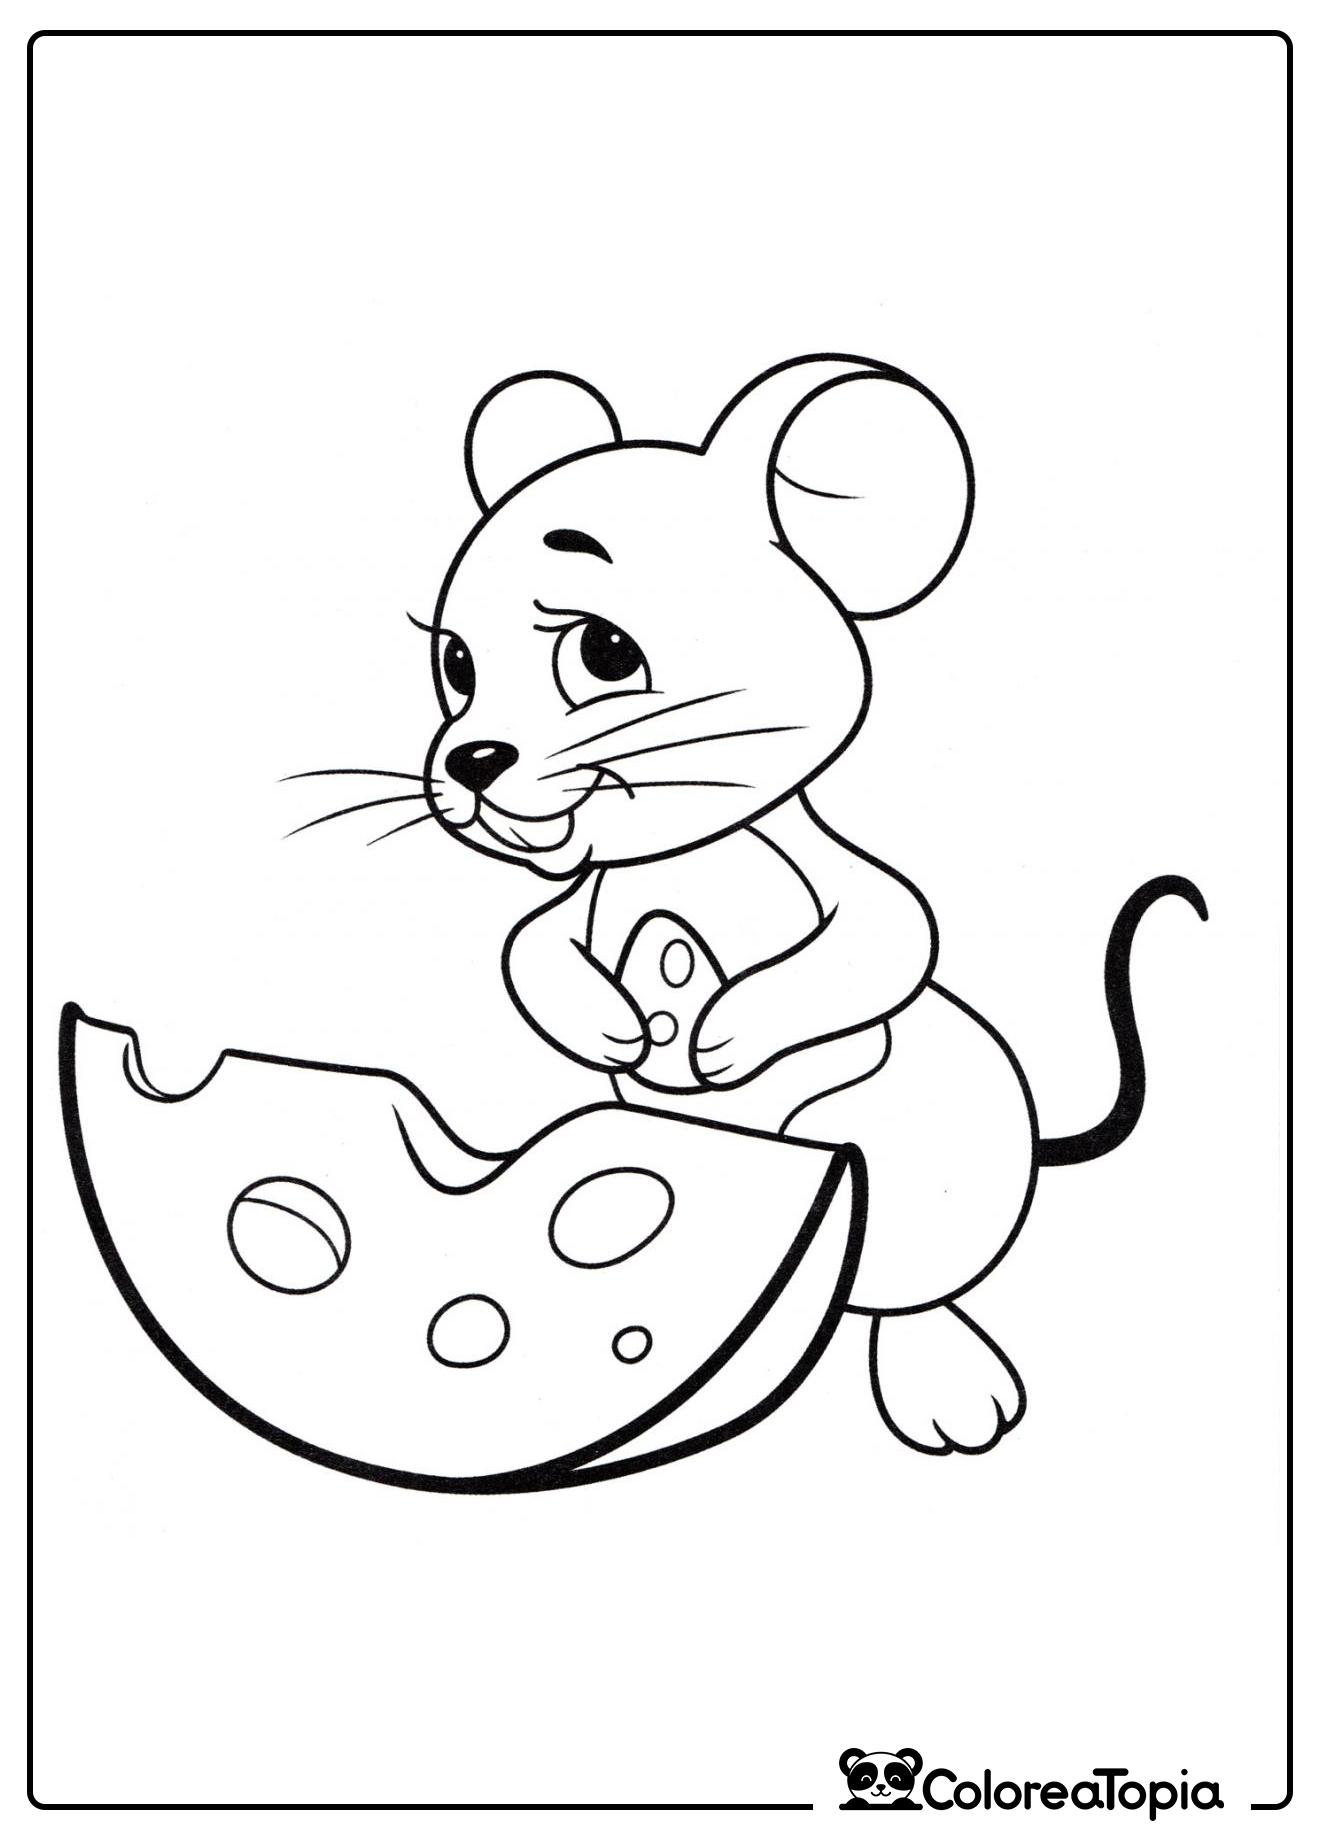 El ratón come queso - dibujo para colorear